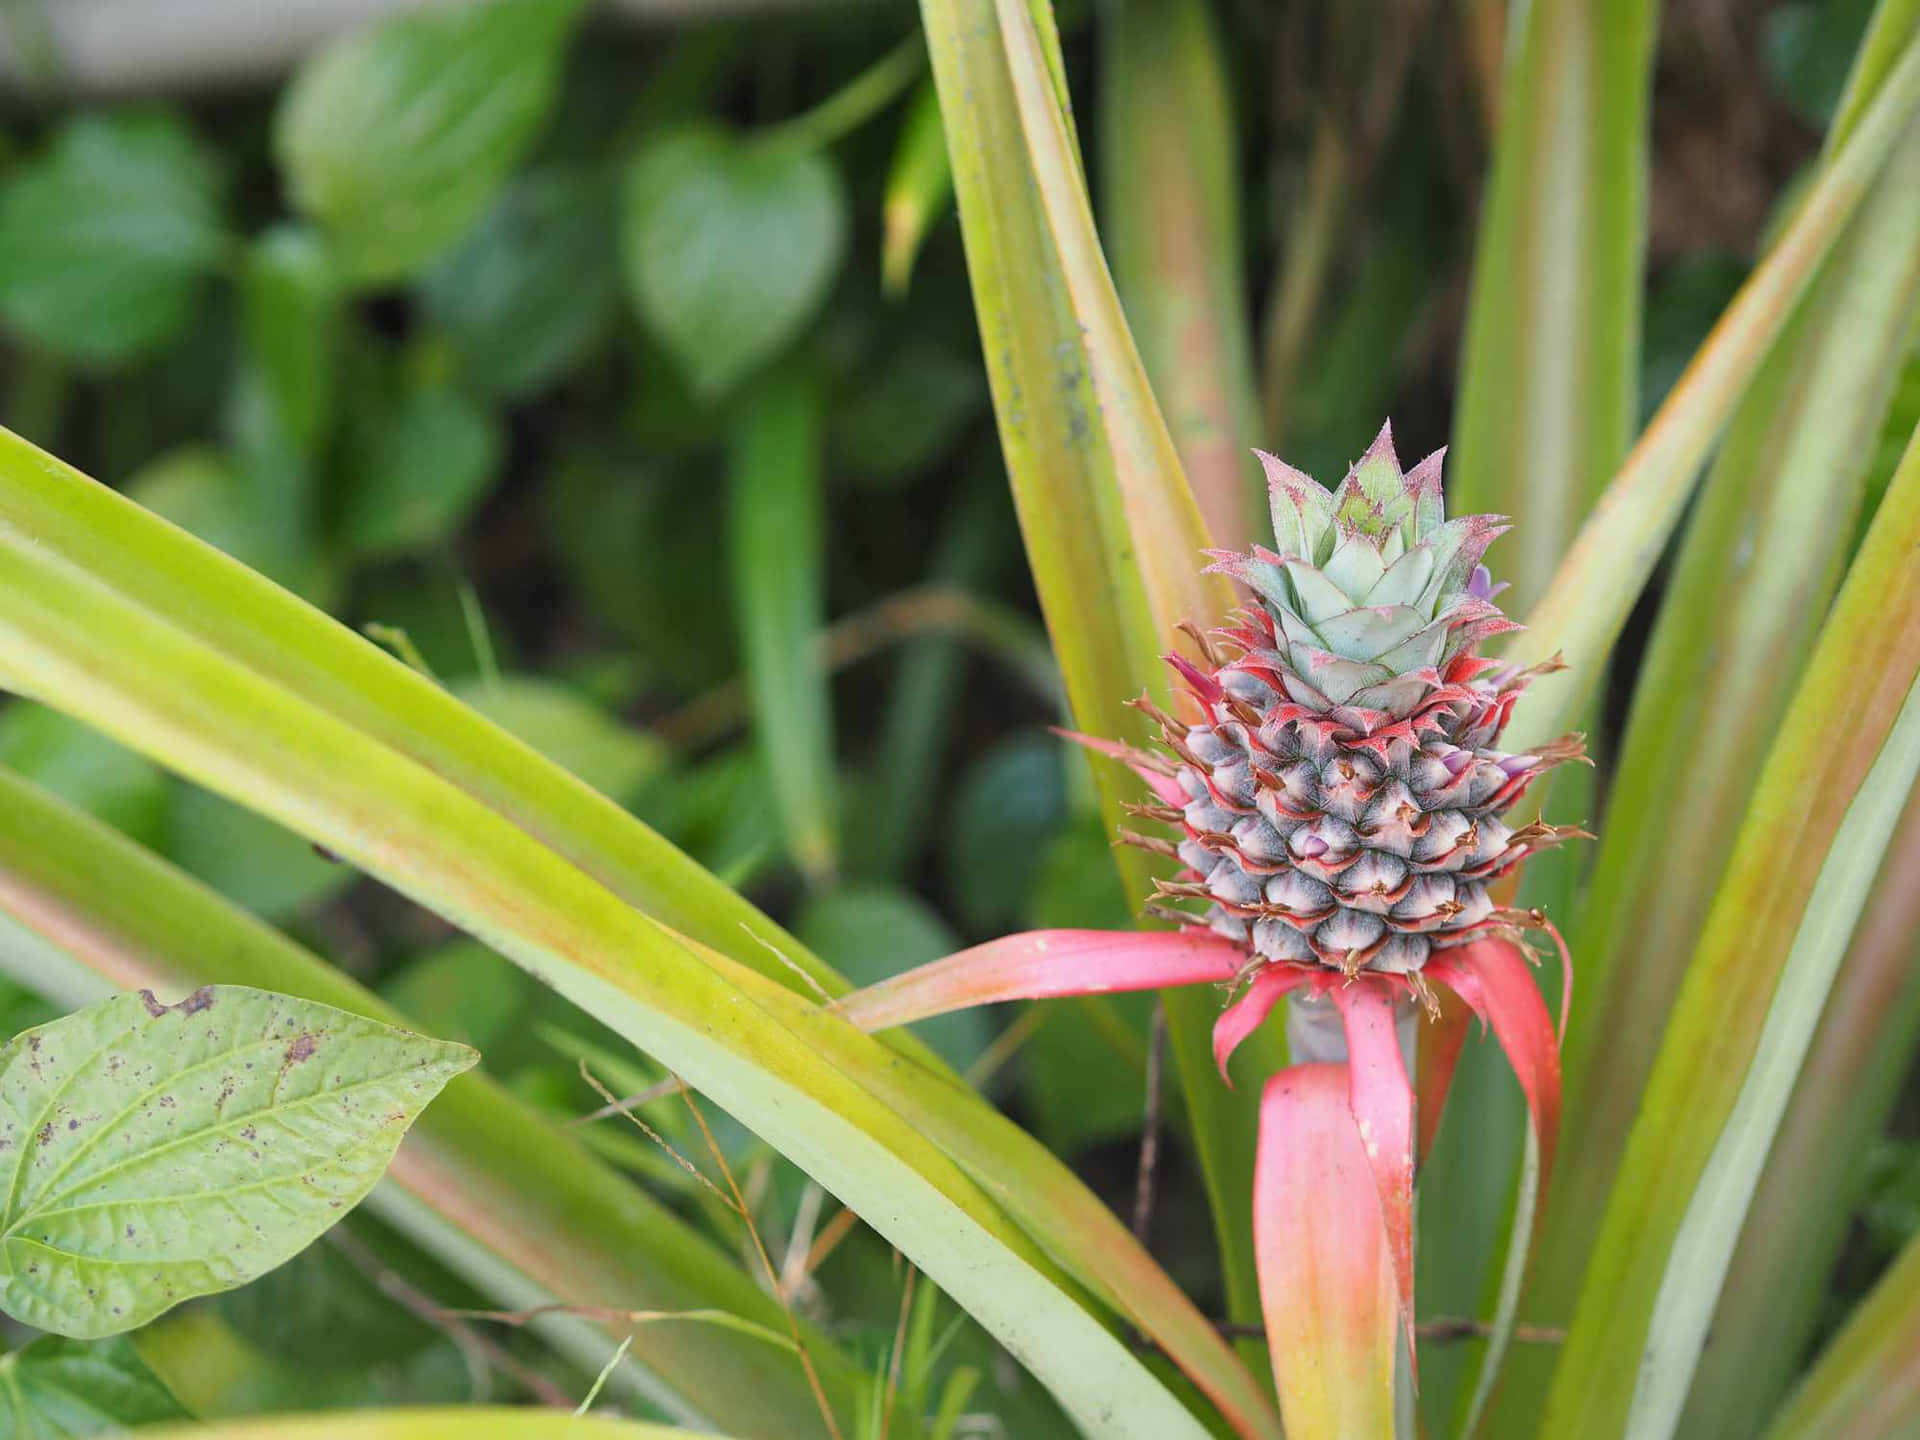 "Lush Pineapple Plant in Full Bloom"